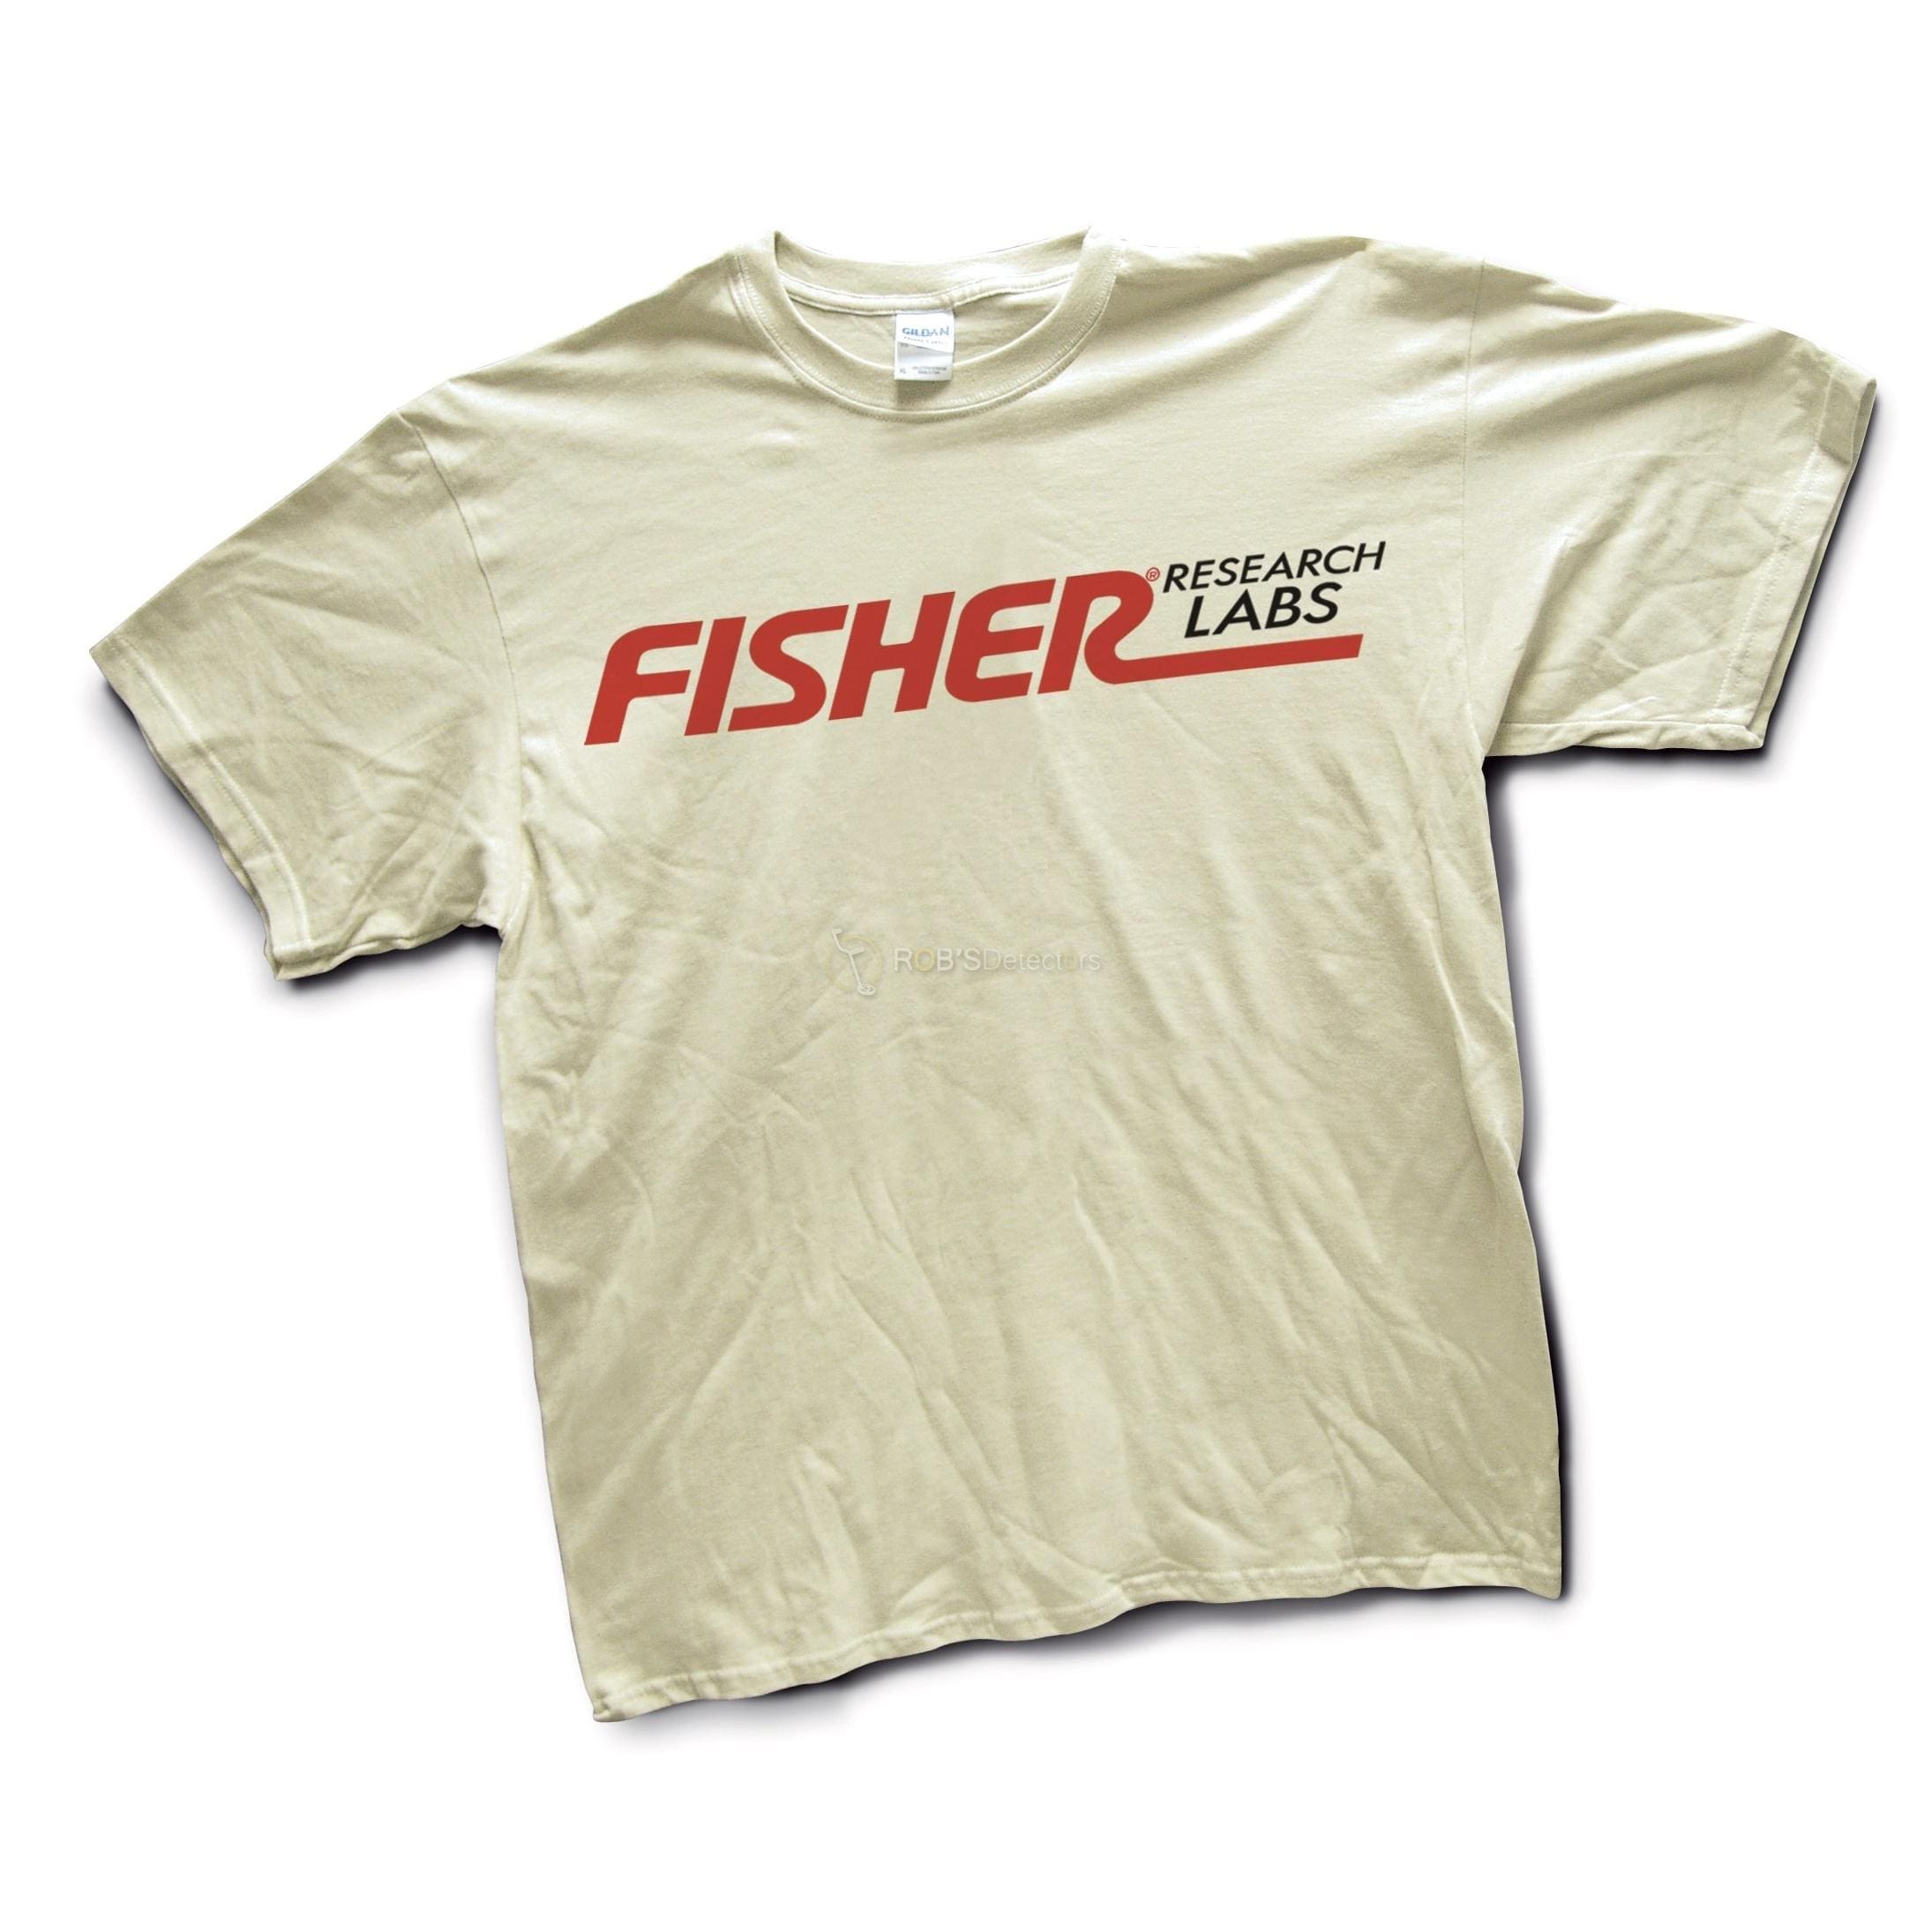 Fisher Metal Detecting T-Shirt – Tan/Brown color